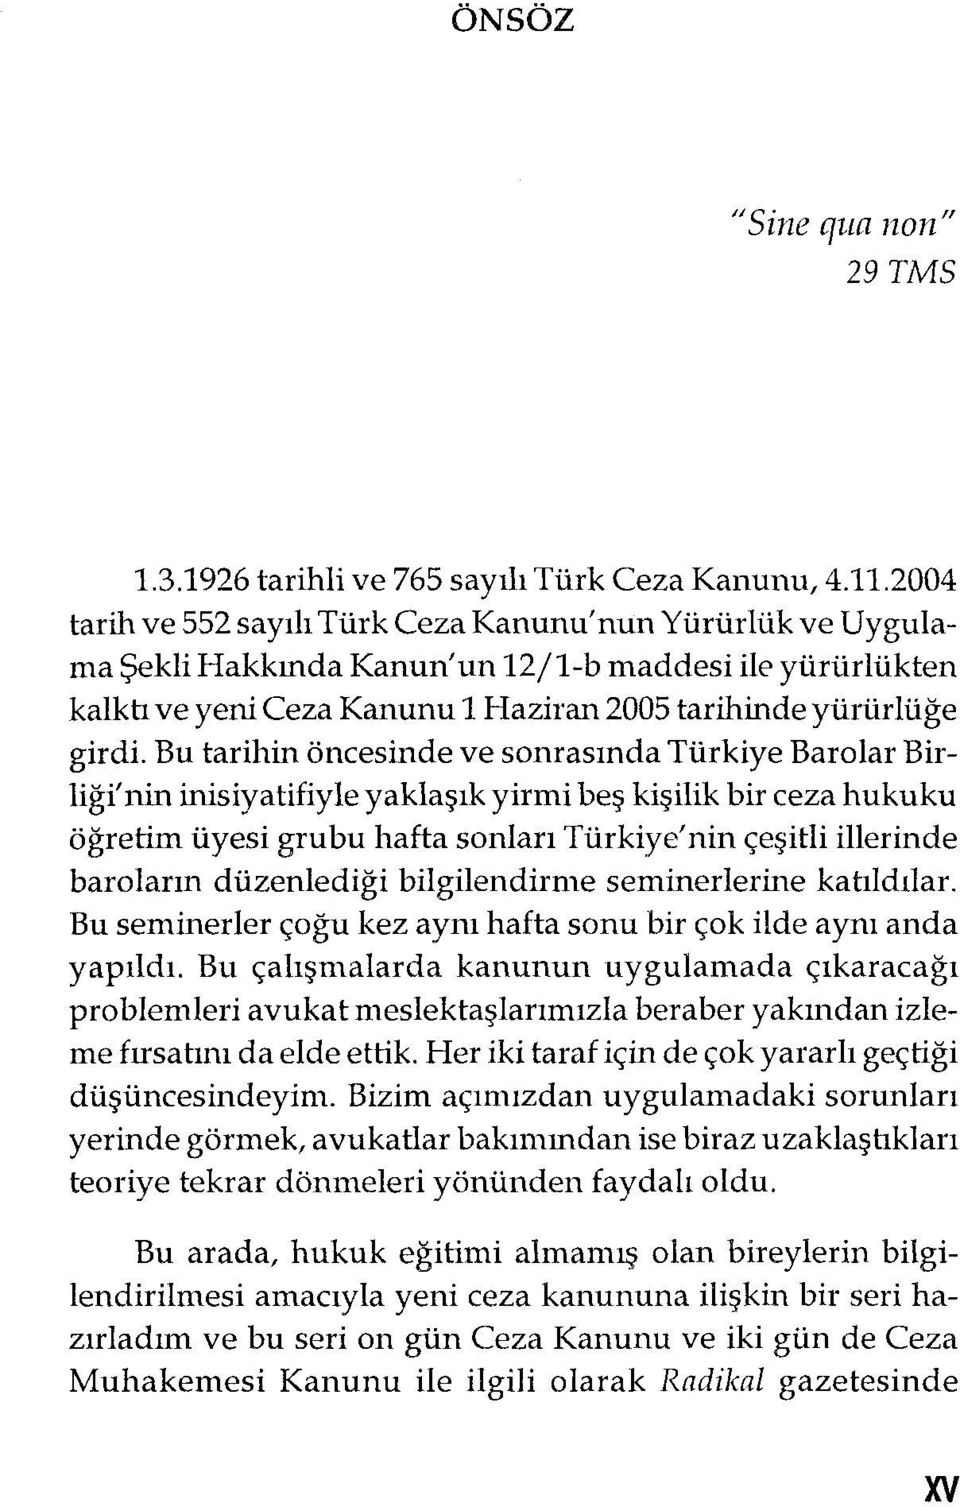 Bu tarihin öncesinde ve sonrasında Türkiye Barolar Birliği' nin inisiyatifiyle yaklaşık yirmi beş kişilik bir ceza hukuku öğretim üyesi grubu hafta sonları Türkiye'nin çeşitli illerinde baroların